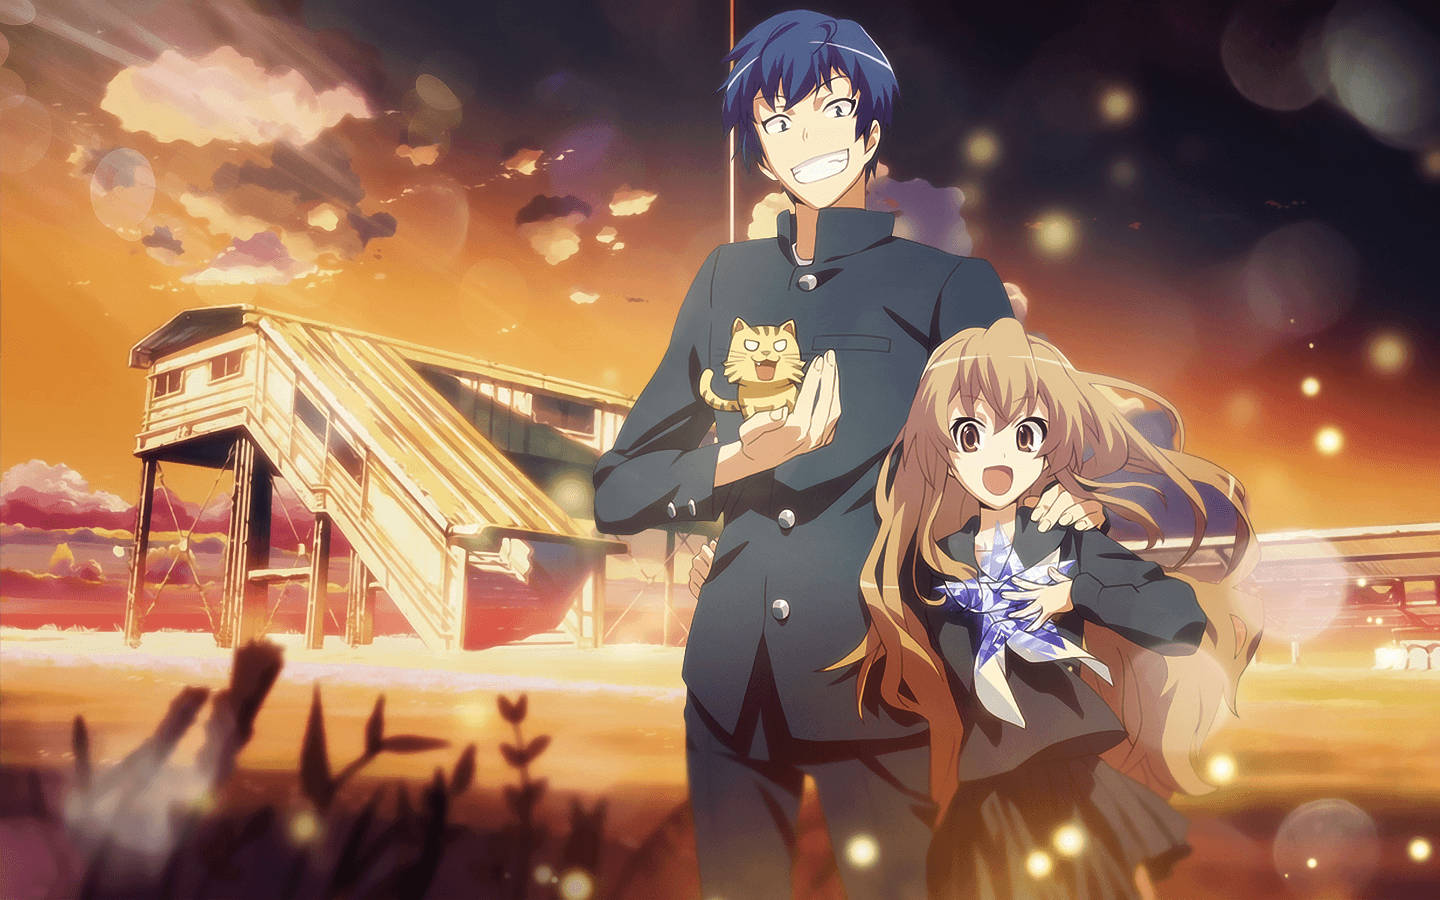 The Perfect Romance Begins - Toradora's Ryuuji And Taiga At Sunset Wallpaper